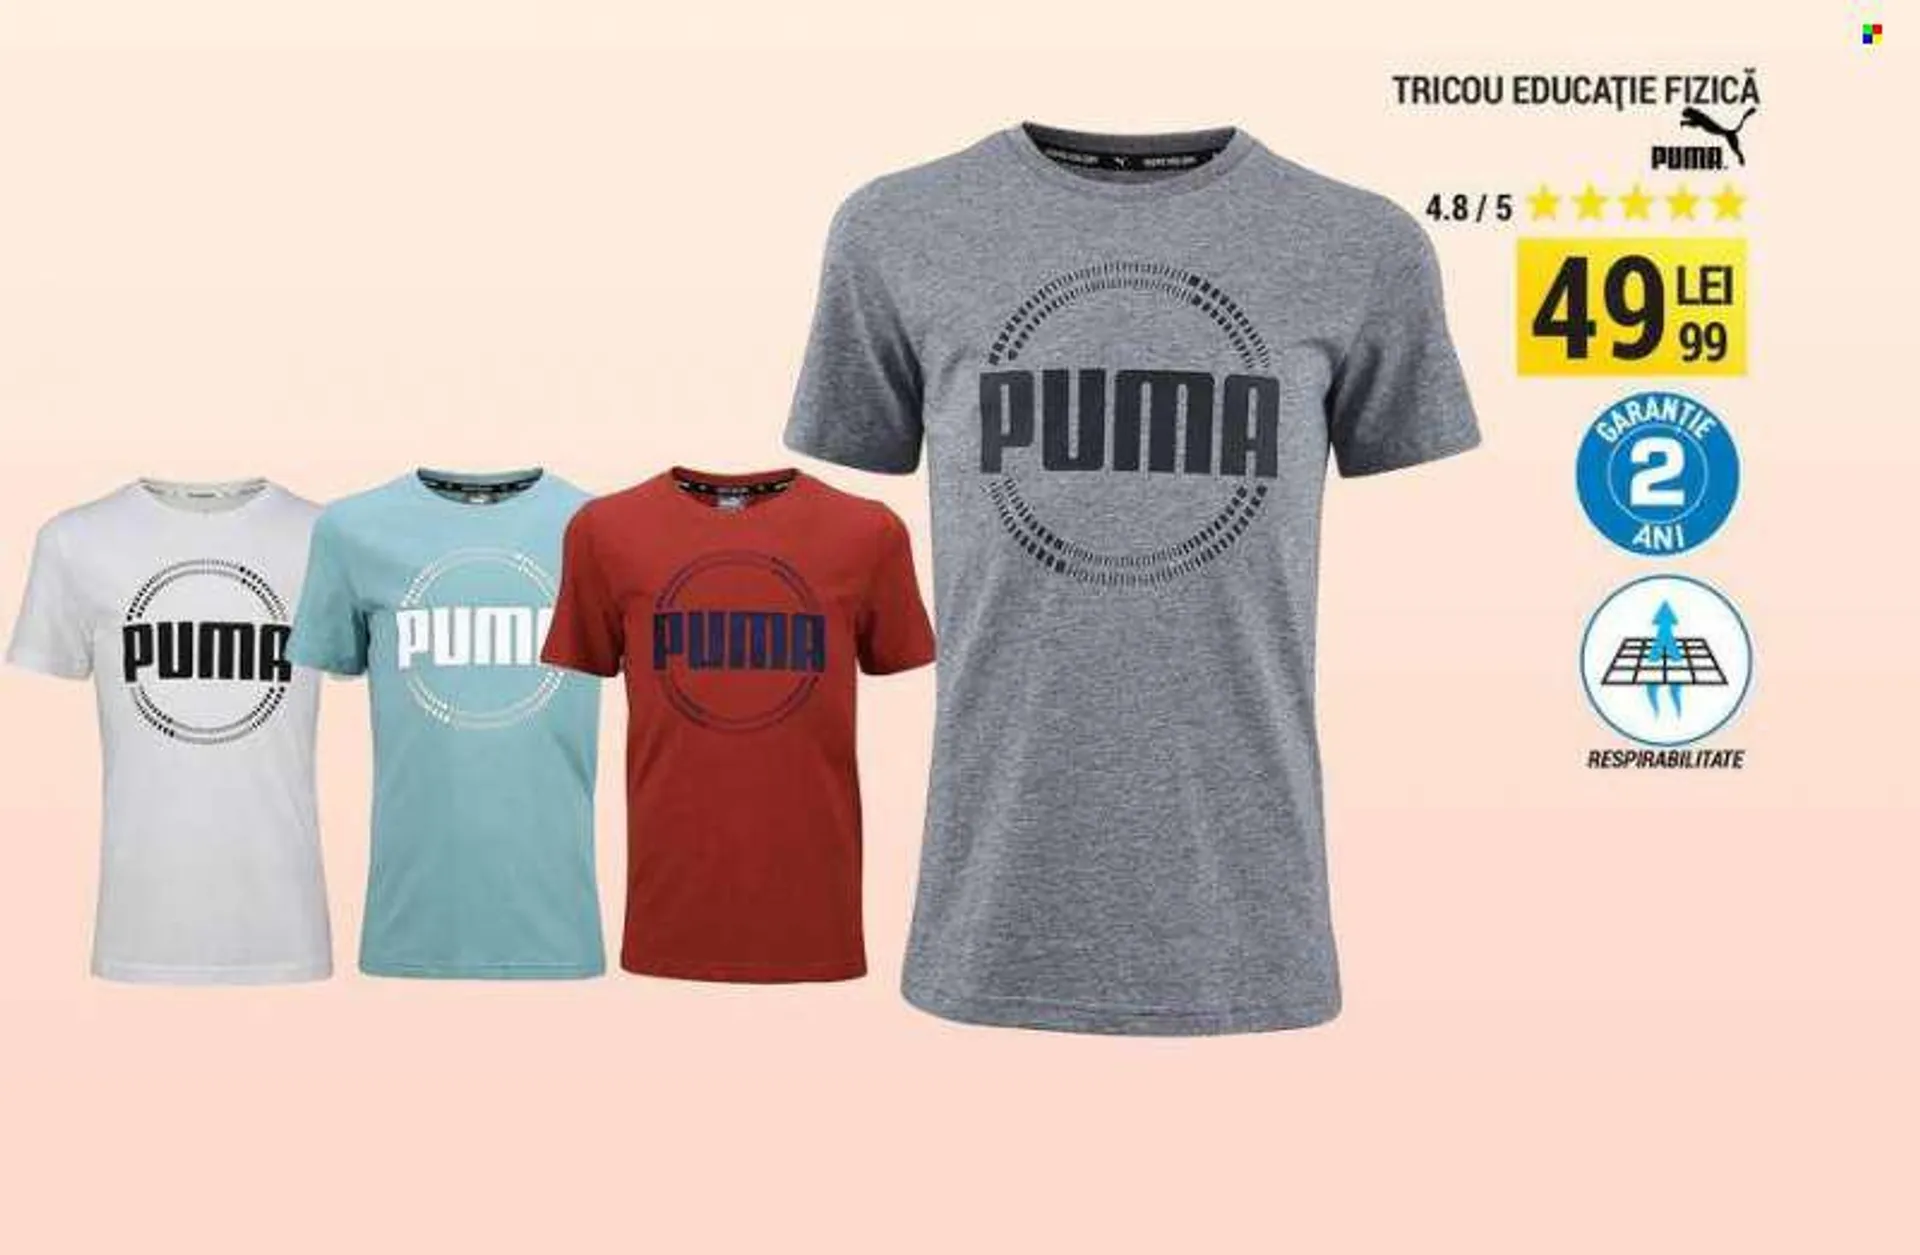 Cataloage Decathlon - Produse în vânzare - Puma, tricou. Pagina 3.